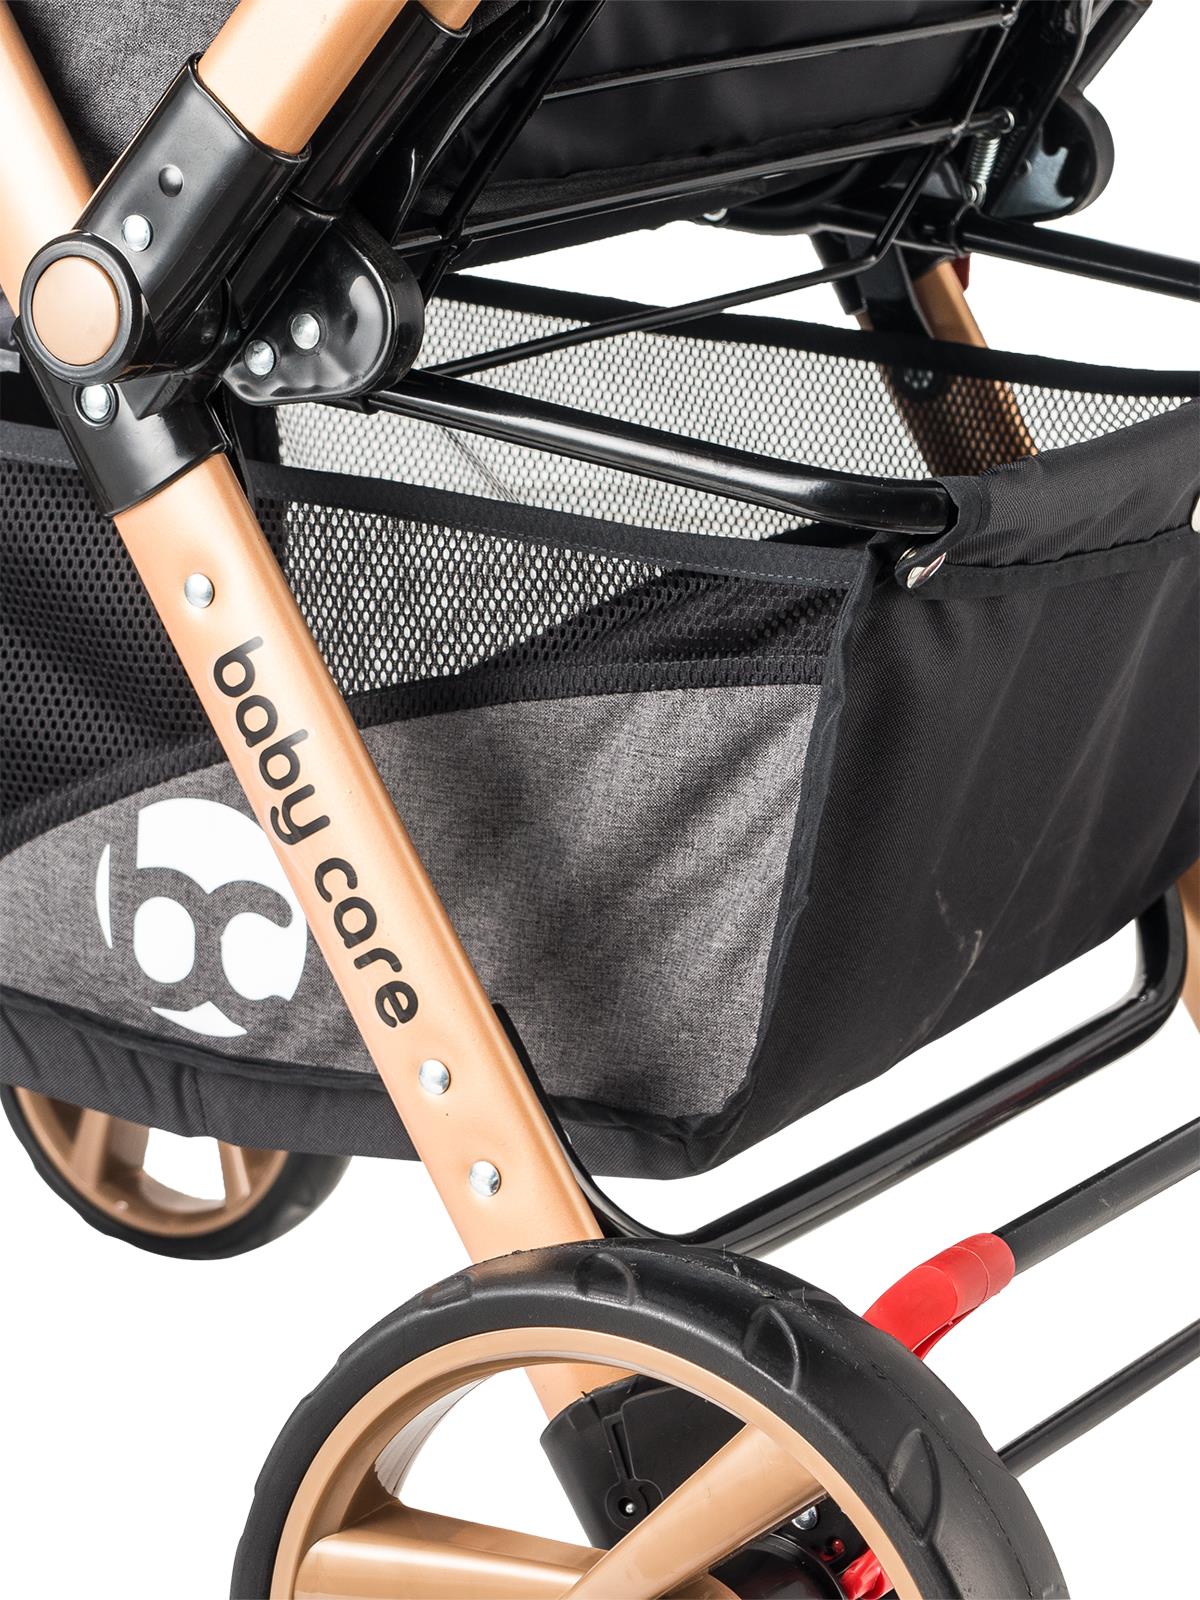 BabyCare Maxi Pro Alüminyum Çift Yönlü Bebek Arabası Siyah